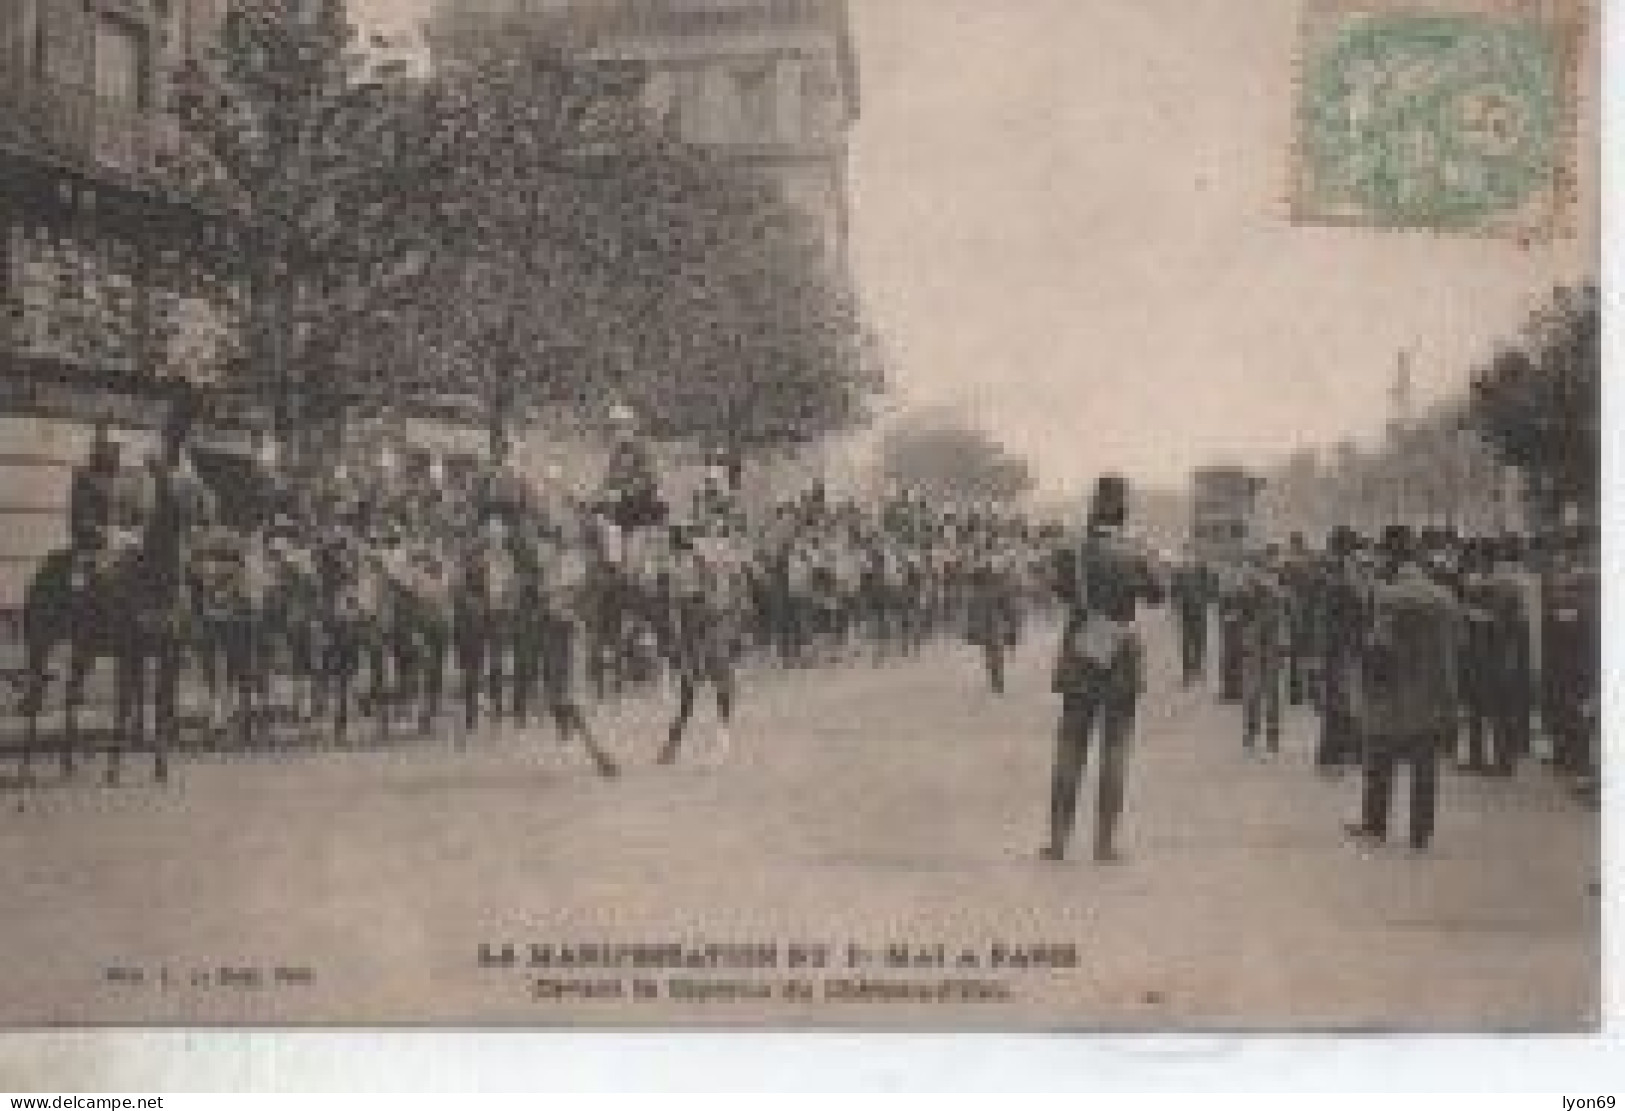 PARISVLA MANIFESTATION  DU 1ER MAI  DEVANT LA CASERNE  DU CHATEAU  D EAU DATE DEPART 1906025 - Vakbonden